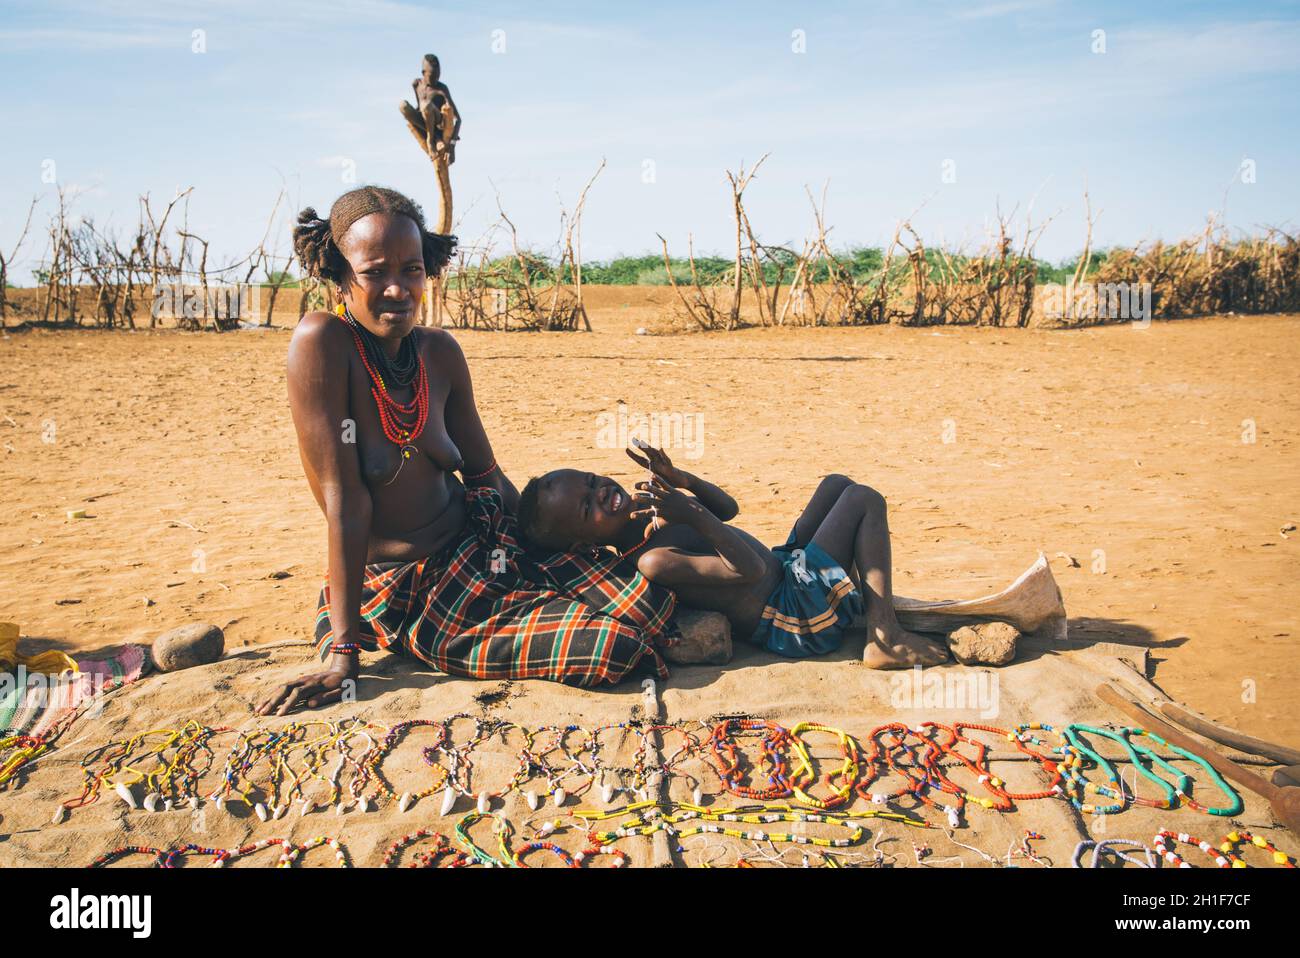 Omorate, Omo Valley, Ethiopie - 11 mai 2019 : femme de la tribu africaine Dasanesh avec bébé offrant des souvenirs faits à la main. Daasanach sont des origines cushitiques Banque D'Images